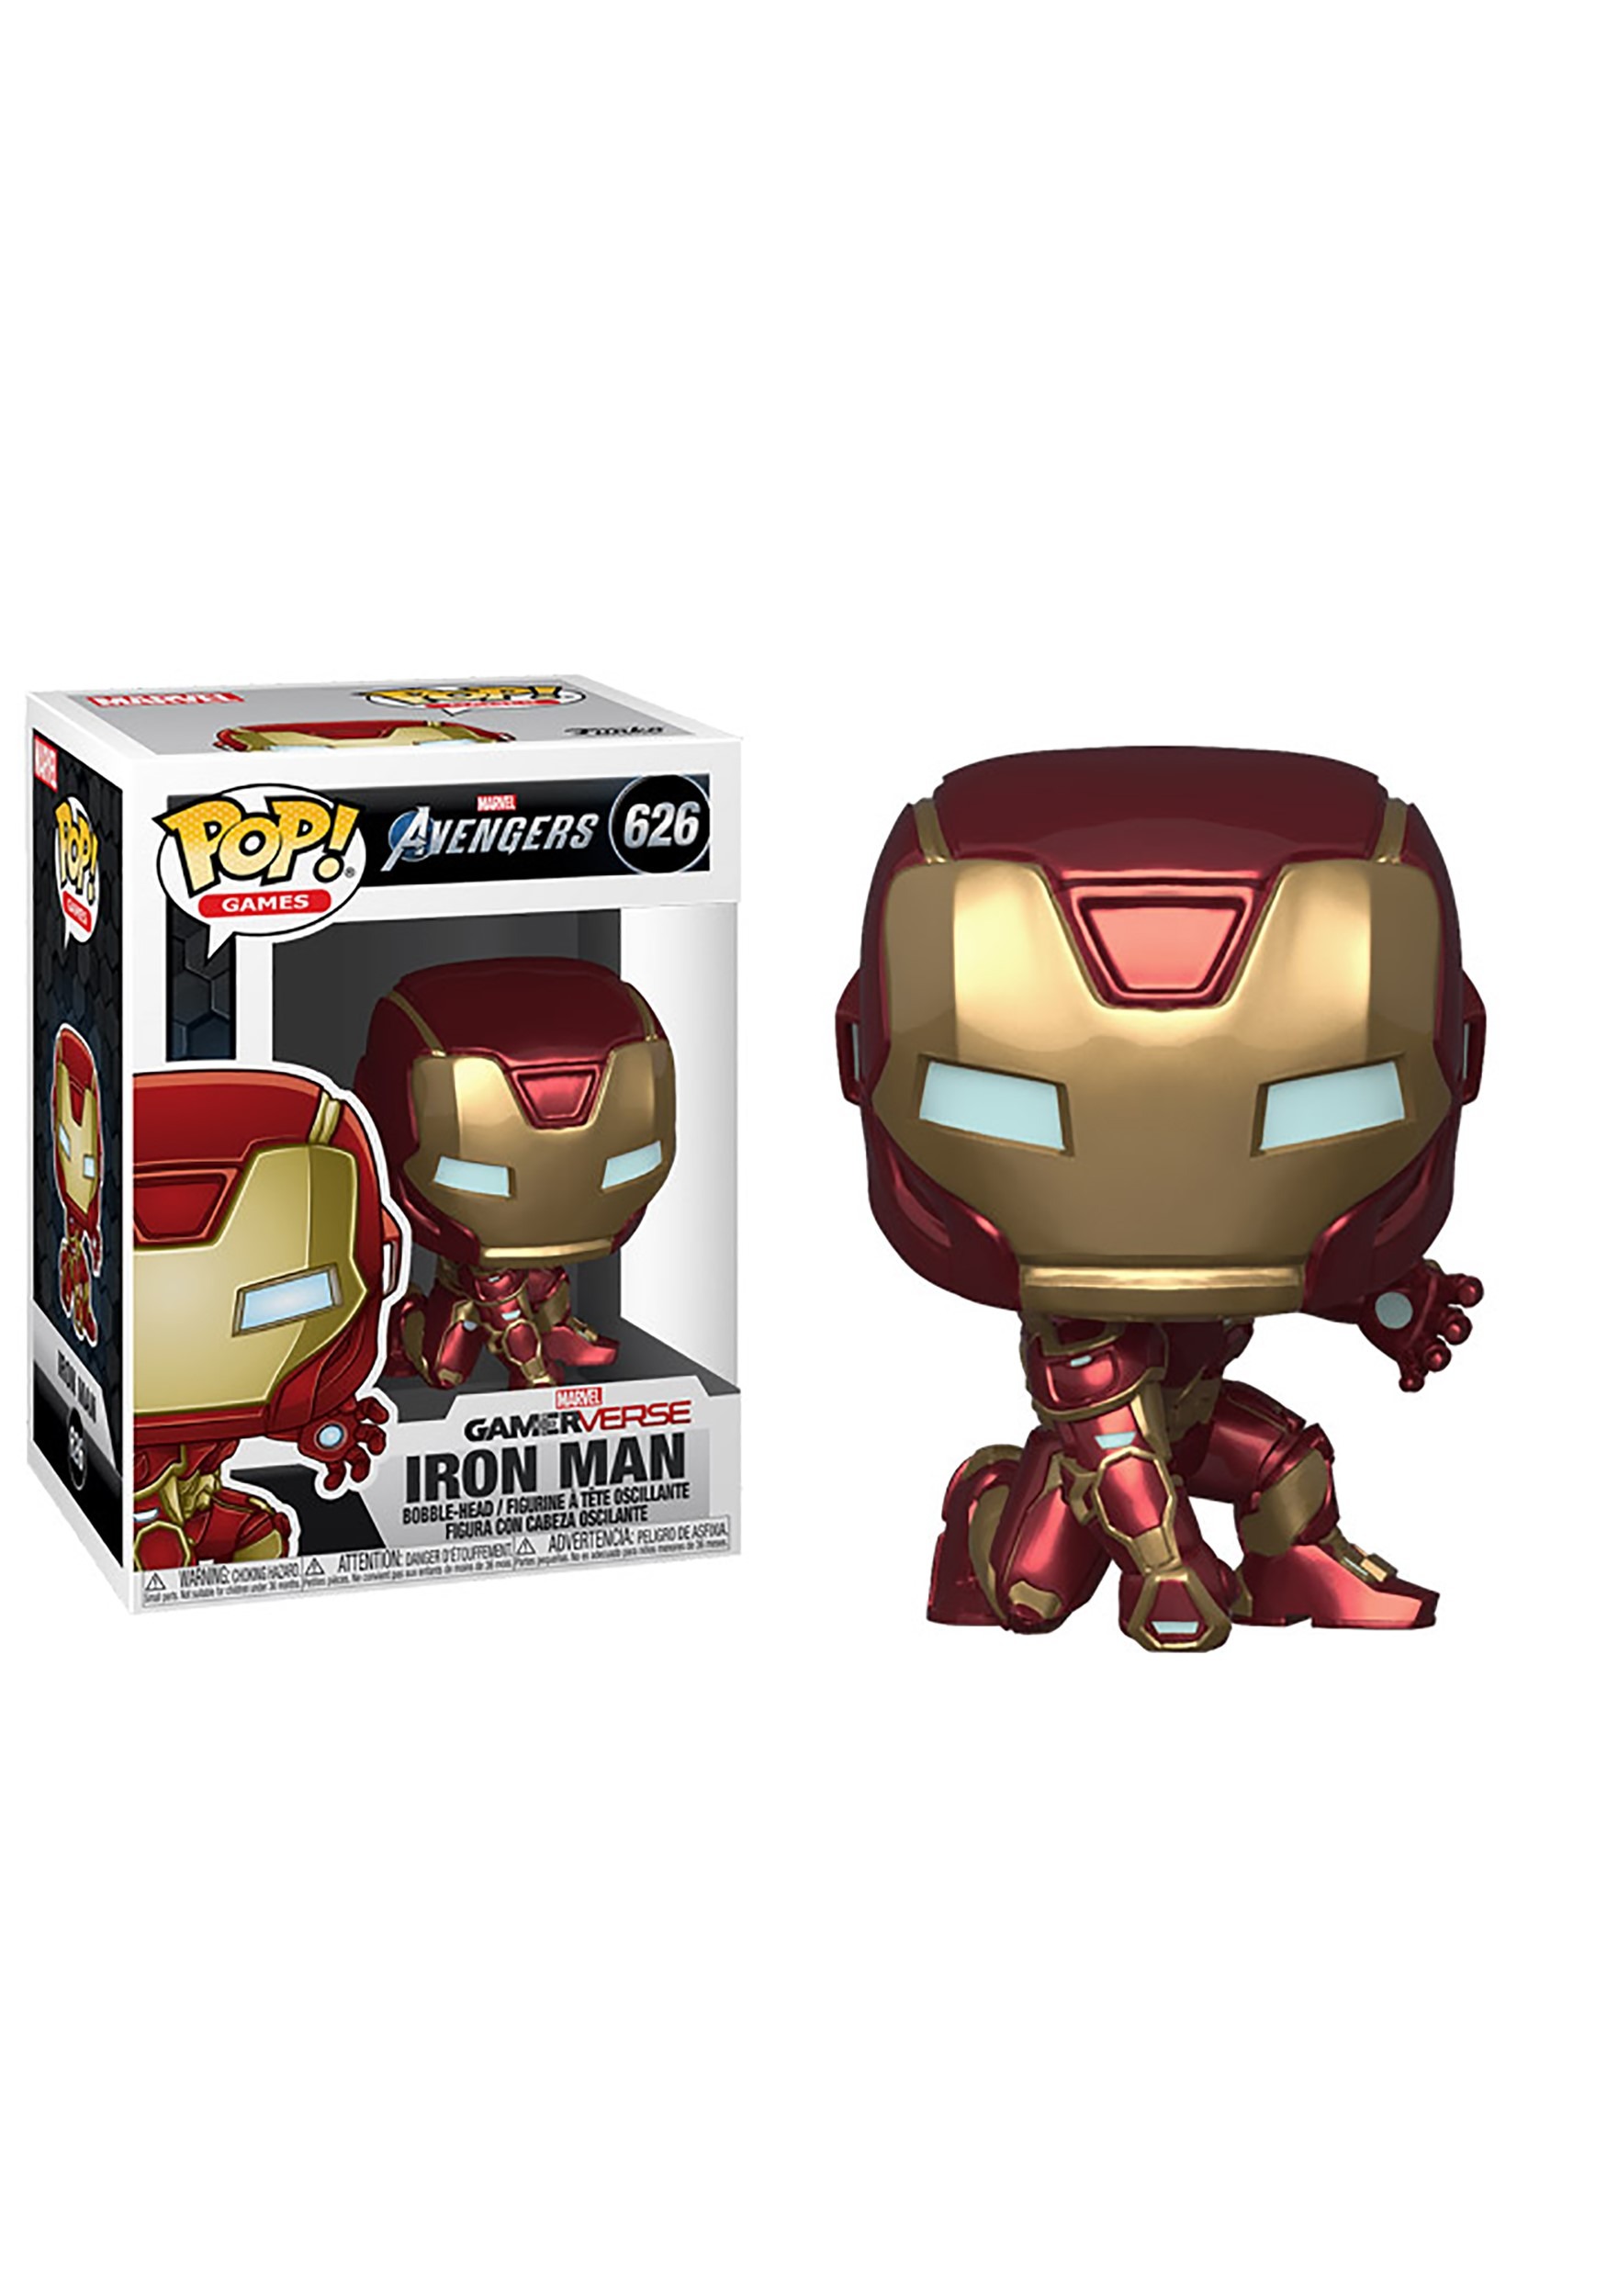 POP! Games Avengers Gamerverse Iron Man Stark Tech Suit